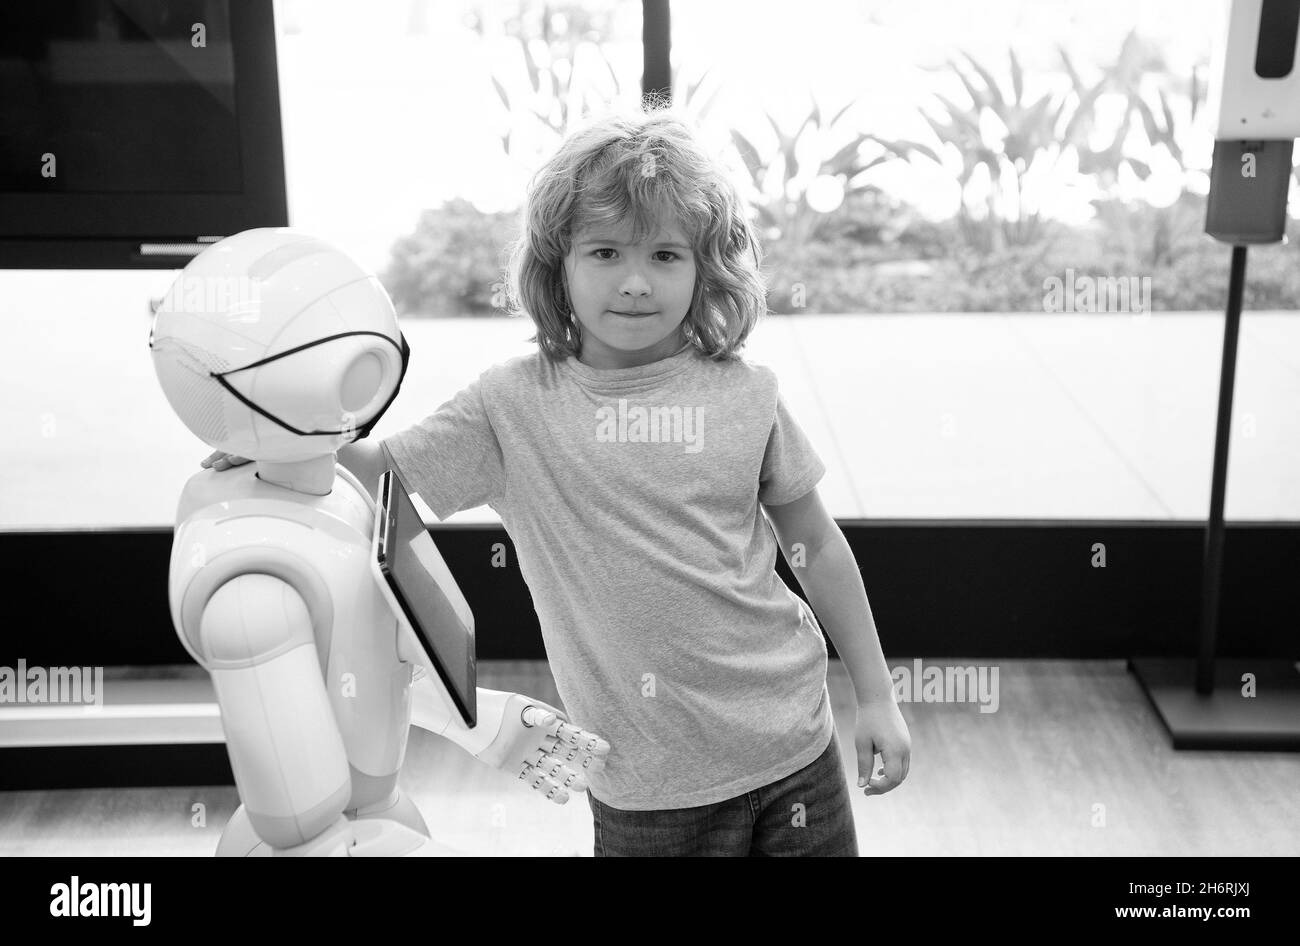 bambino e assistente robot con schermo informativo in maschera protettiva. futuro pandemico robotico Foto Stock